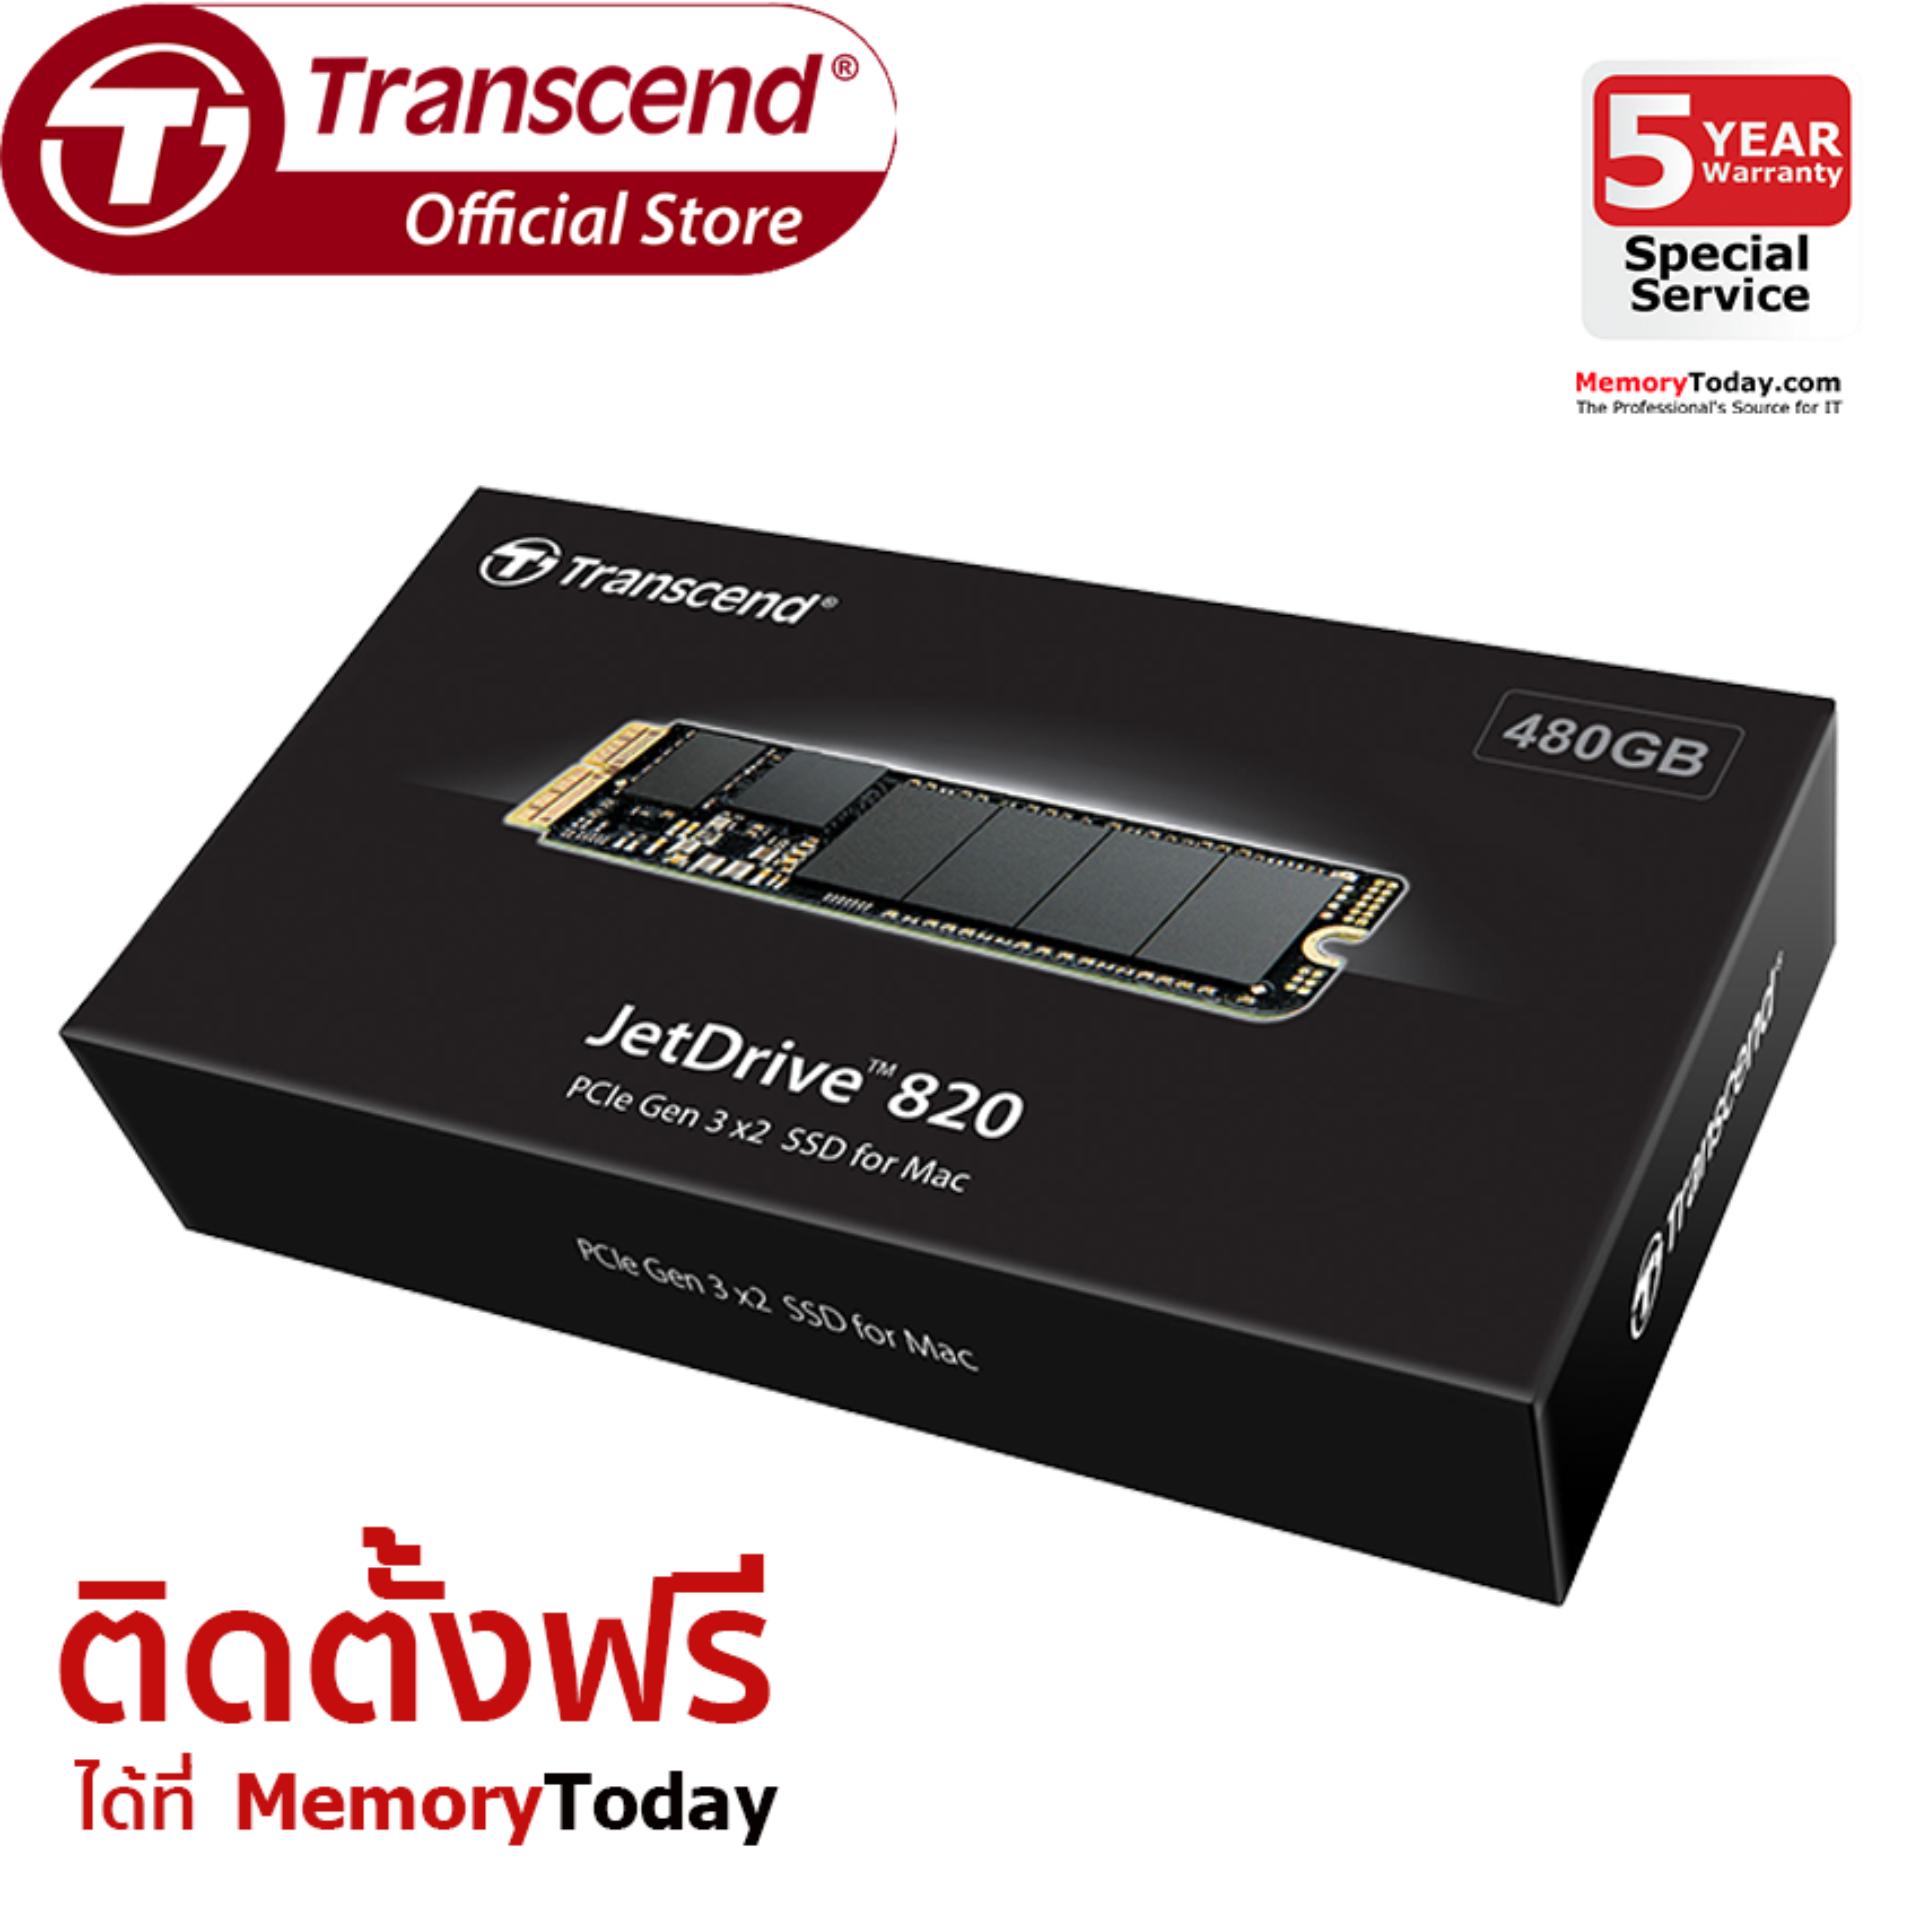 Transcend JetDrive 820 SSD Upgrade for Mac 480GB (TS480GJDM820)